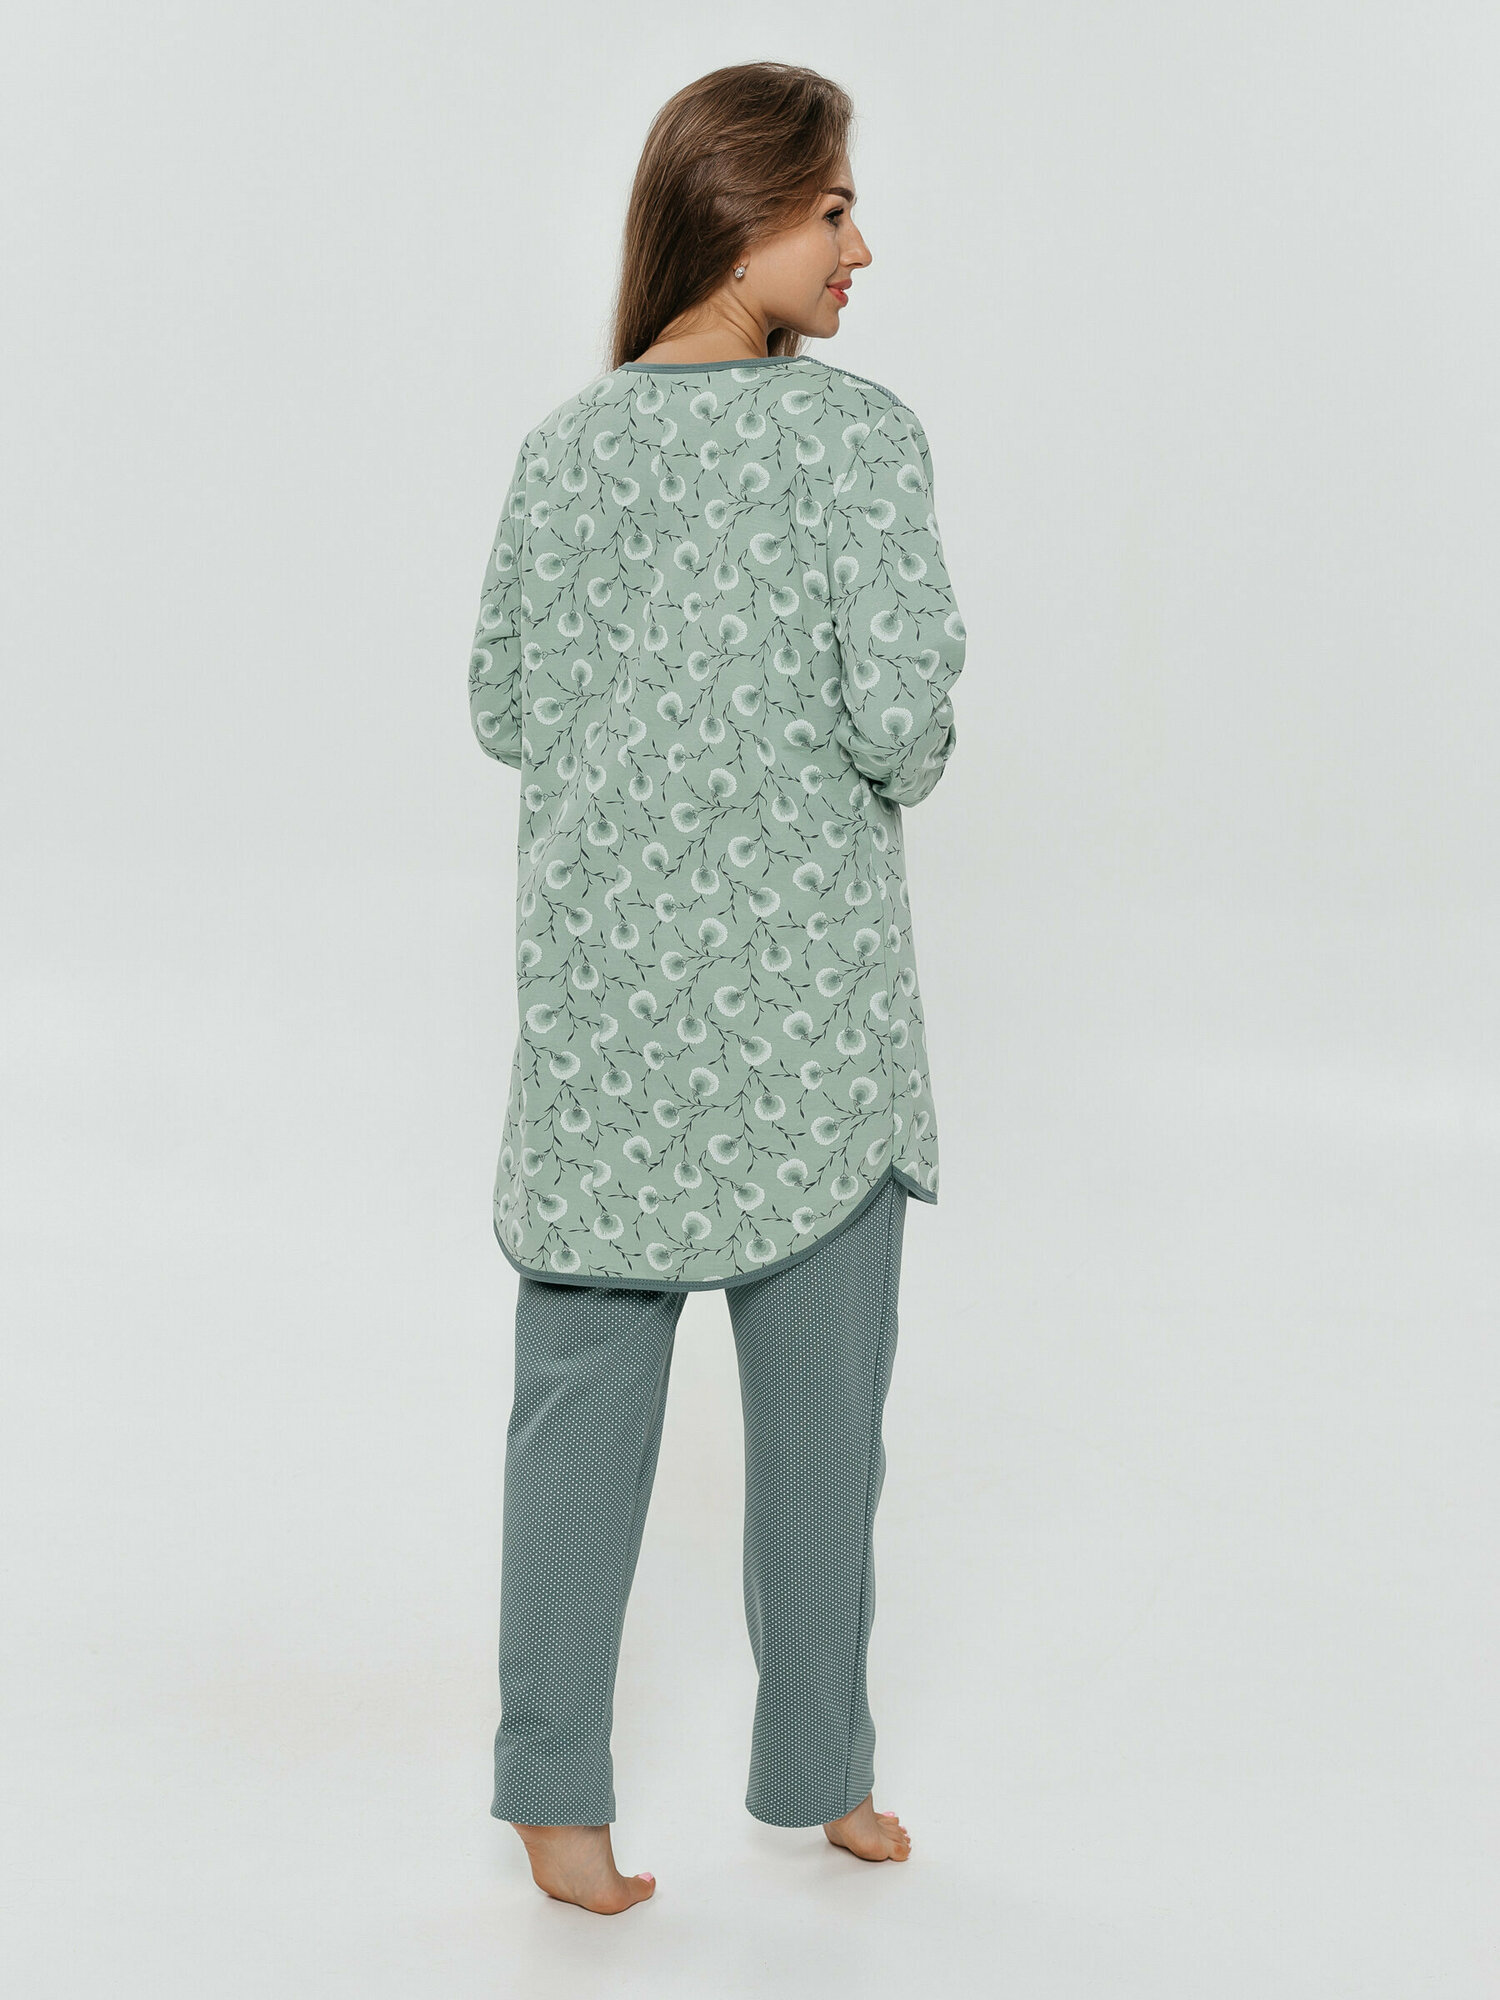 Пижама LOVETEX.STORE, рубашка, брюки, длинный рукав, трикотажная, утепленная, пояс на резинке, размер 64, зеленый - фотография № 5